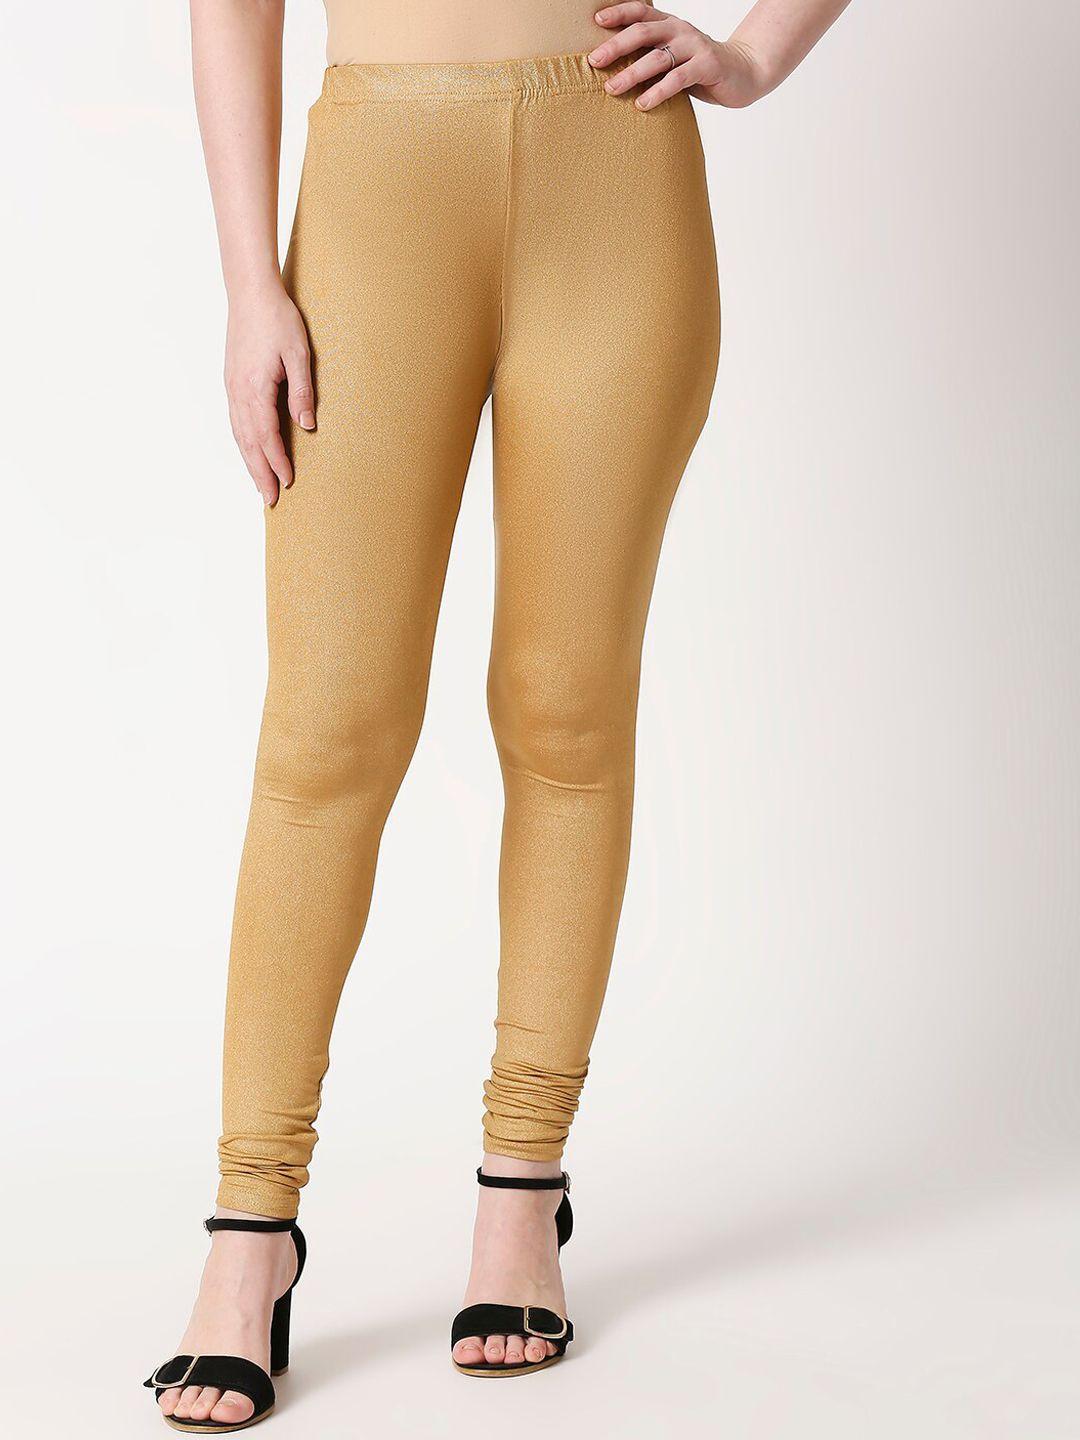 zri-women-copper-coloured-solid-churidar-length-shimmer-leggings